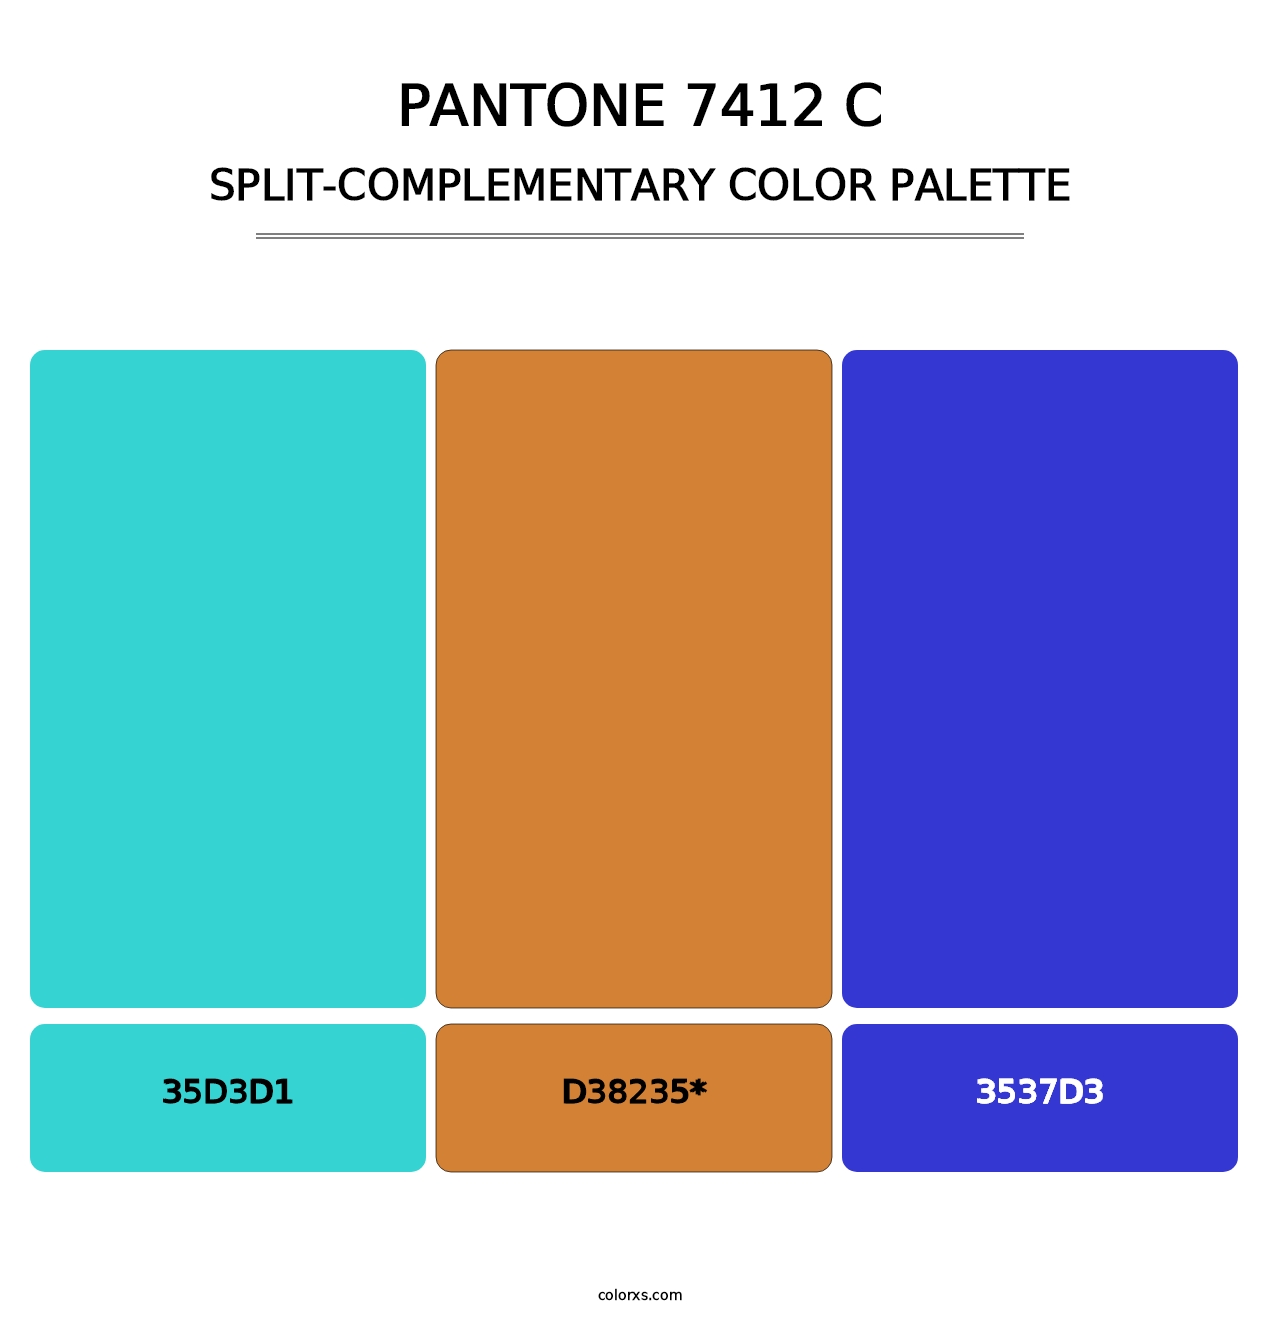 PANTONE 7412 C - Split-Complementary Color Palette